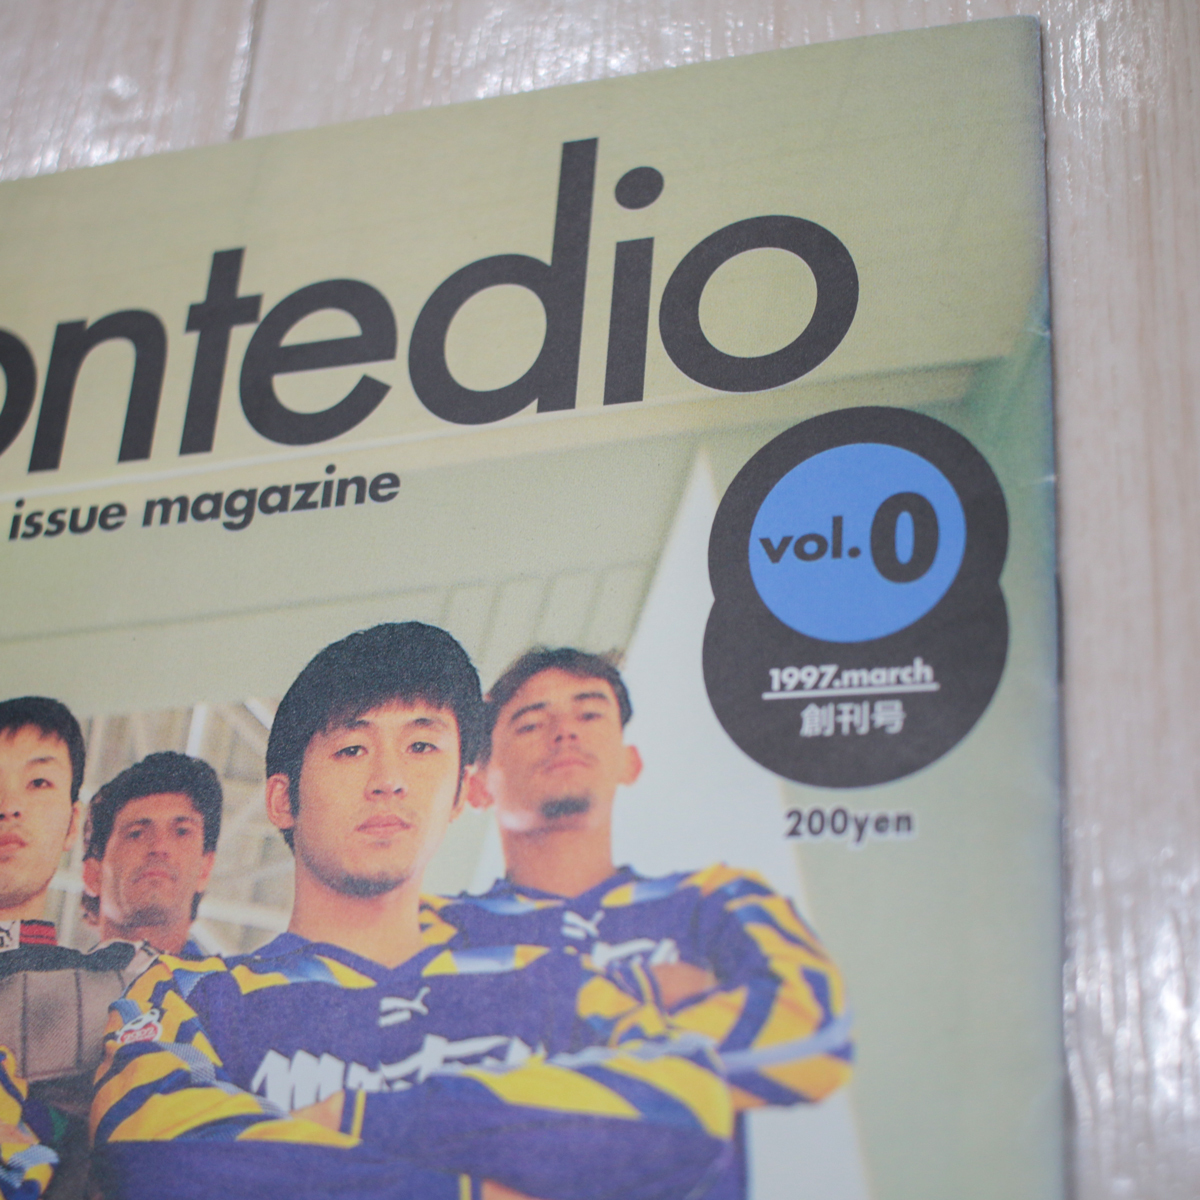 モンテディオ山形【Montedio real time, special issue magazine/vol.0/1997 march/創刊号/高橋健二/シジクレイ】ゆうパケットポスト配送_画像2